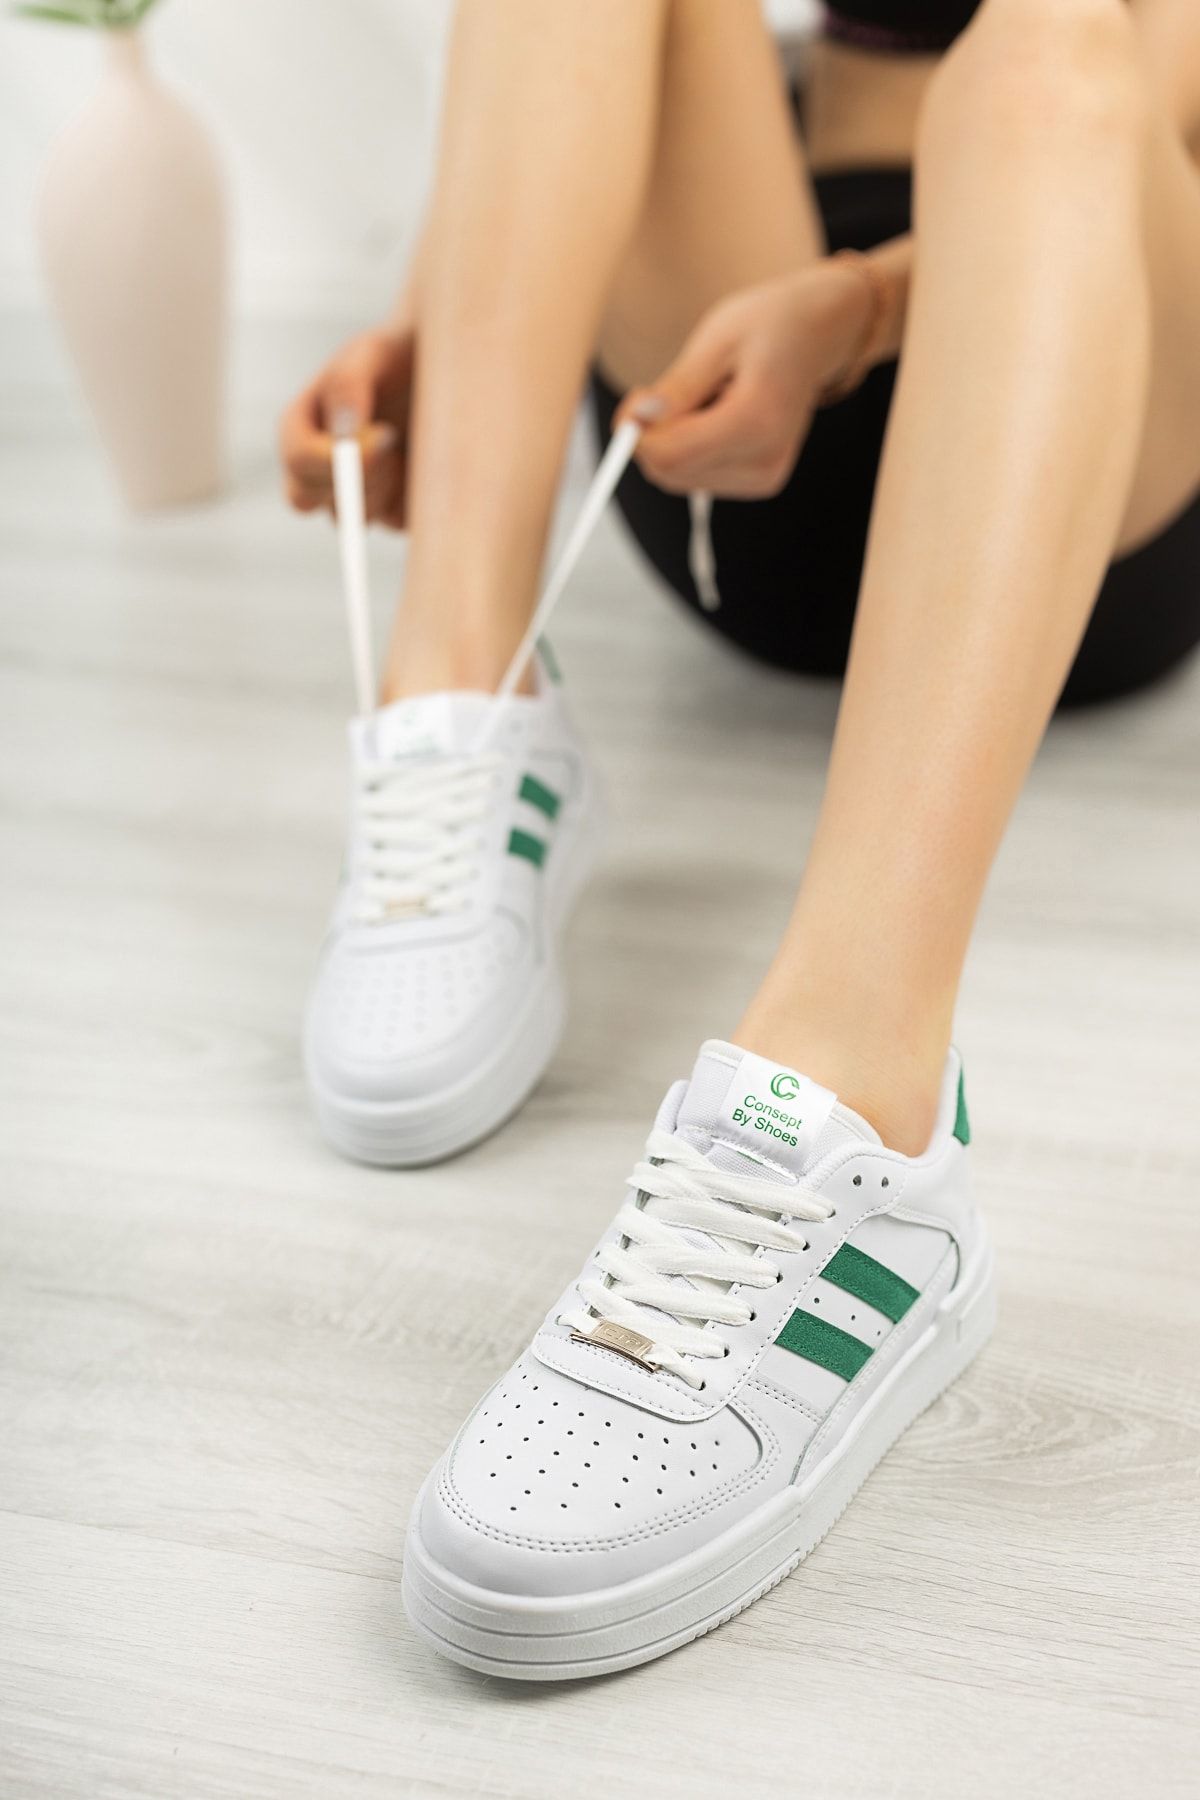 Freemax Unisex Garantili Ortopedik Hafif Esnek Sağlam Sneaker Spor Ayakkabı Beyaz Yeşil